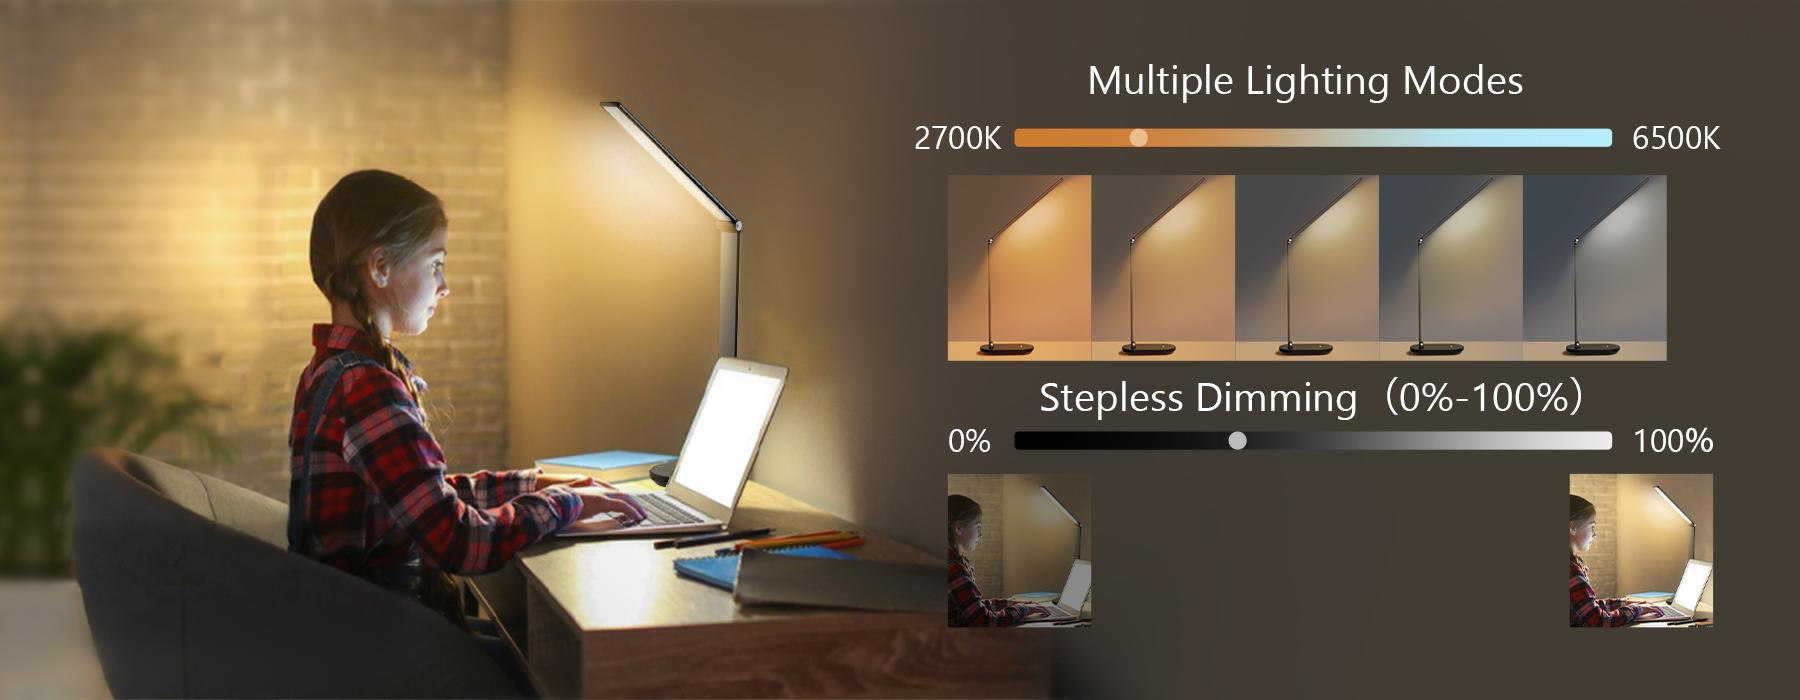 Univers Digital - VOCOlinc Smart LED Lumière Ampoule Fonctionne